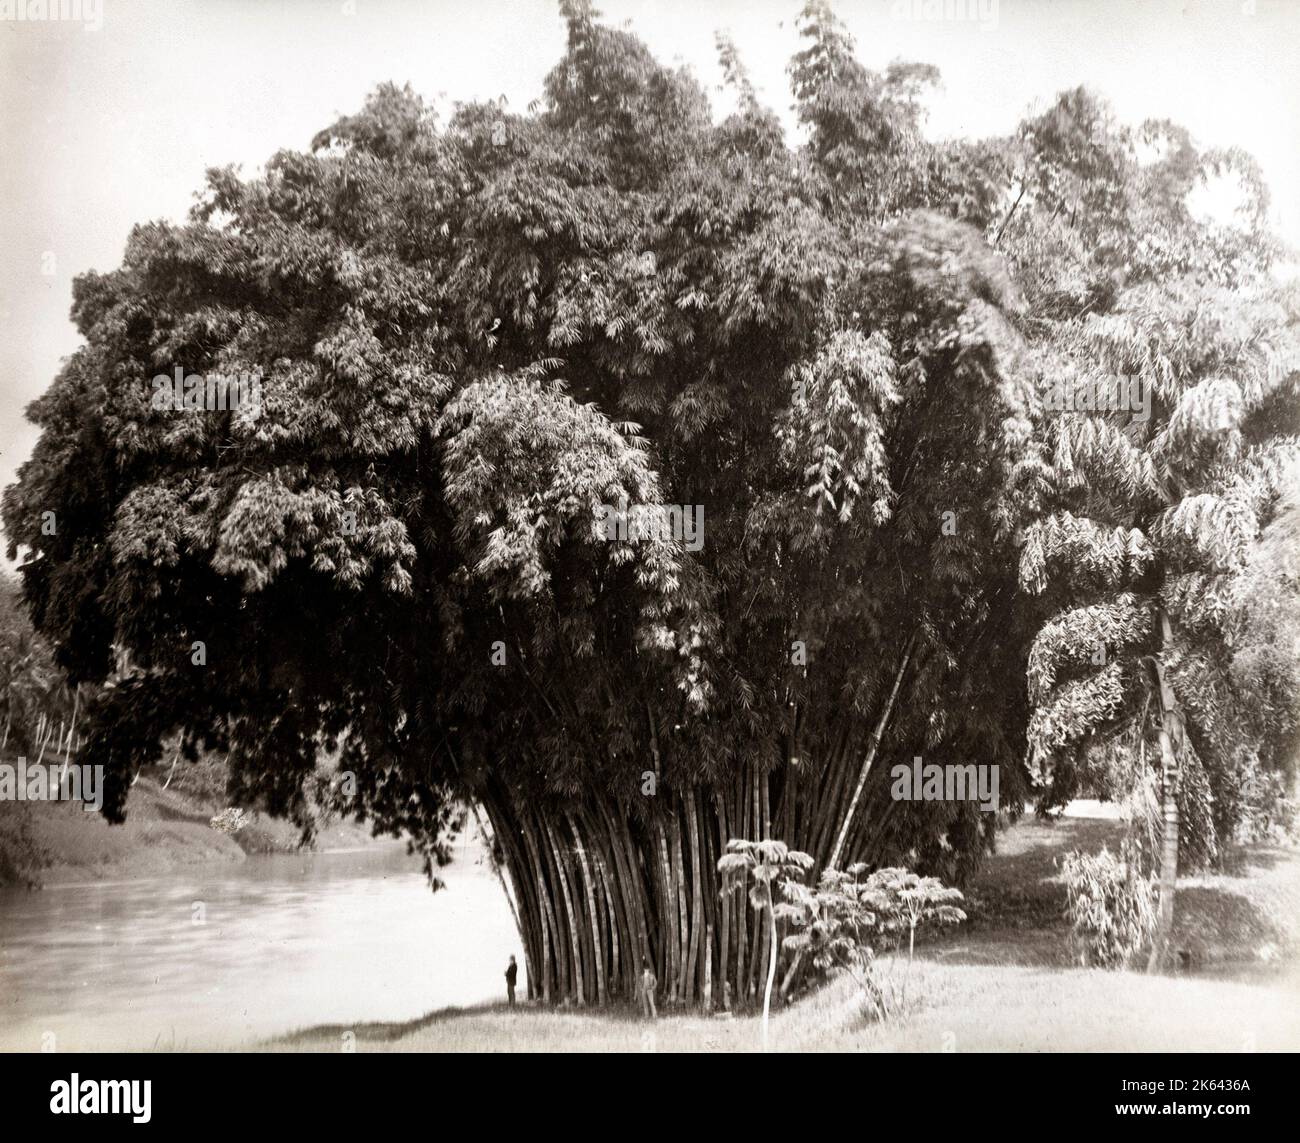 Photographie vintage du 19th siècle : bambou géant, Ceylan, Sri Lanka Banque D'Images